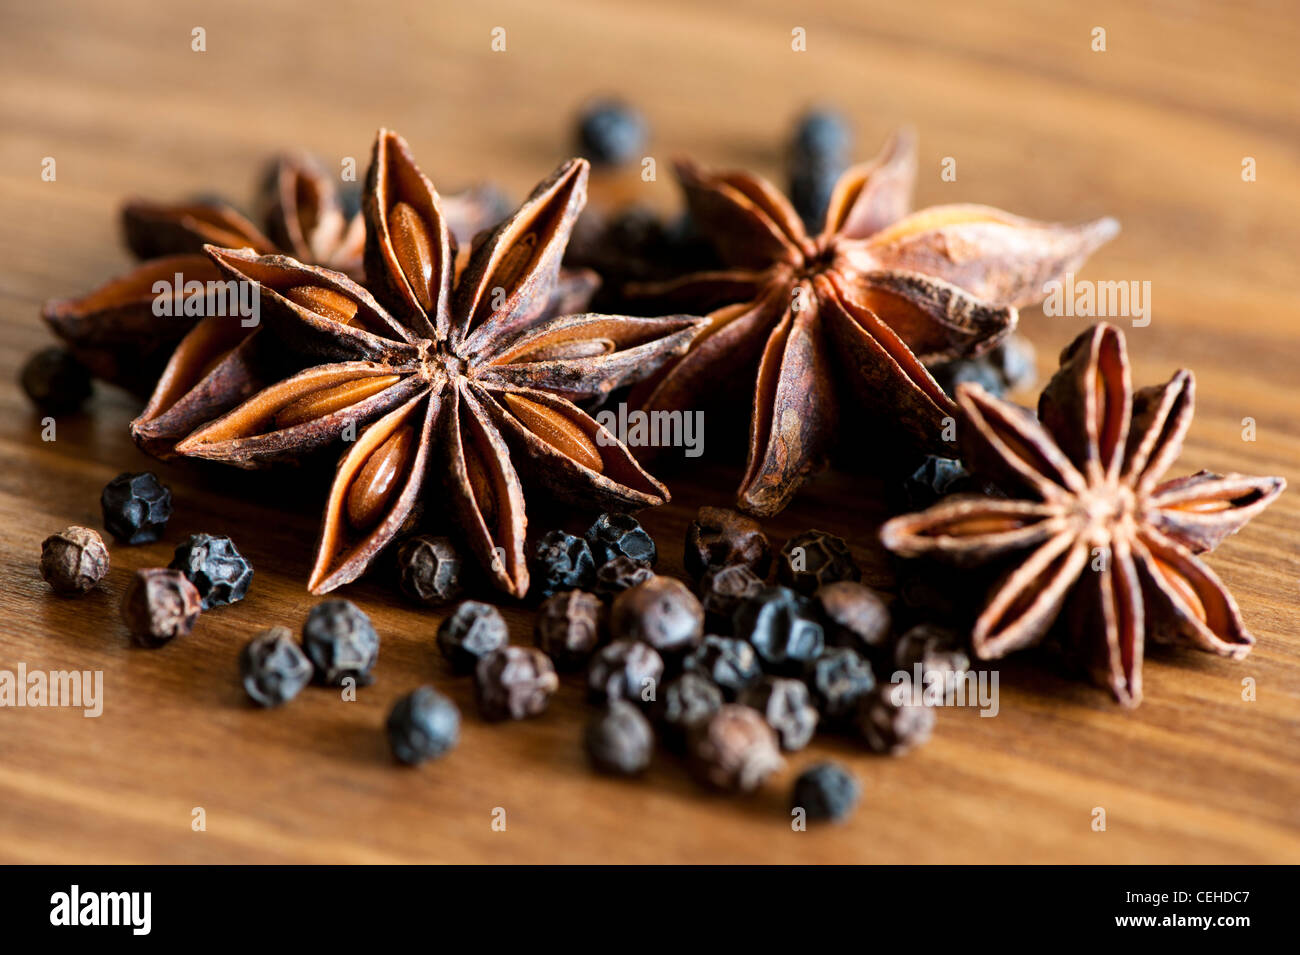 Star Anise, Illicium verum, and Black Peppercorns, Piper nigrum Stock Photo